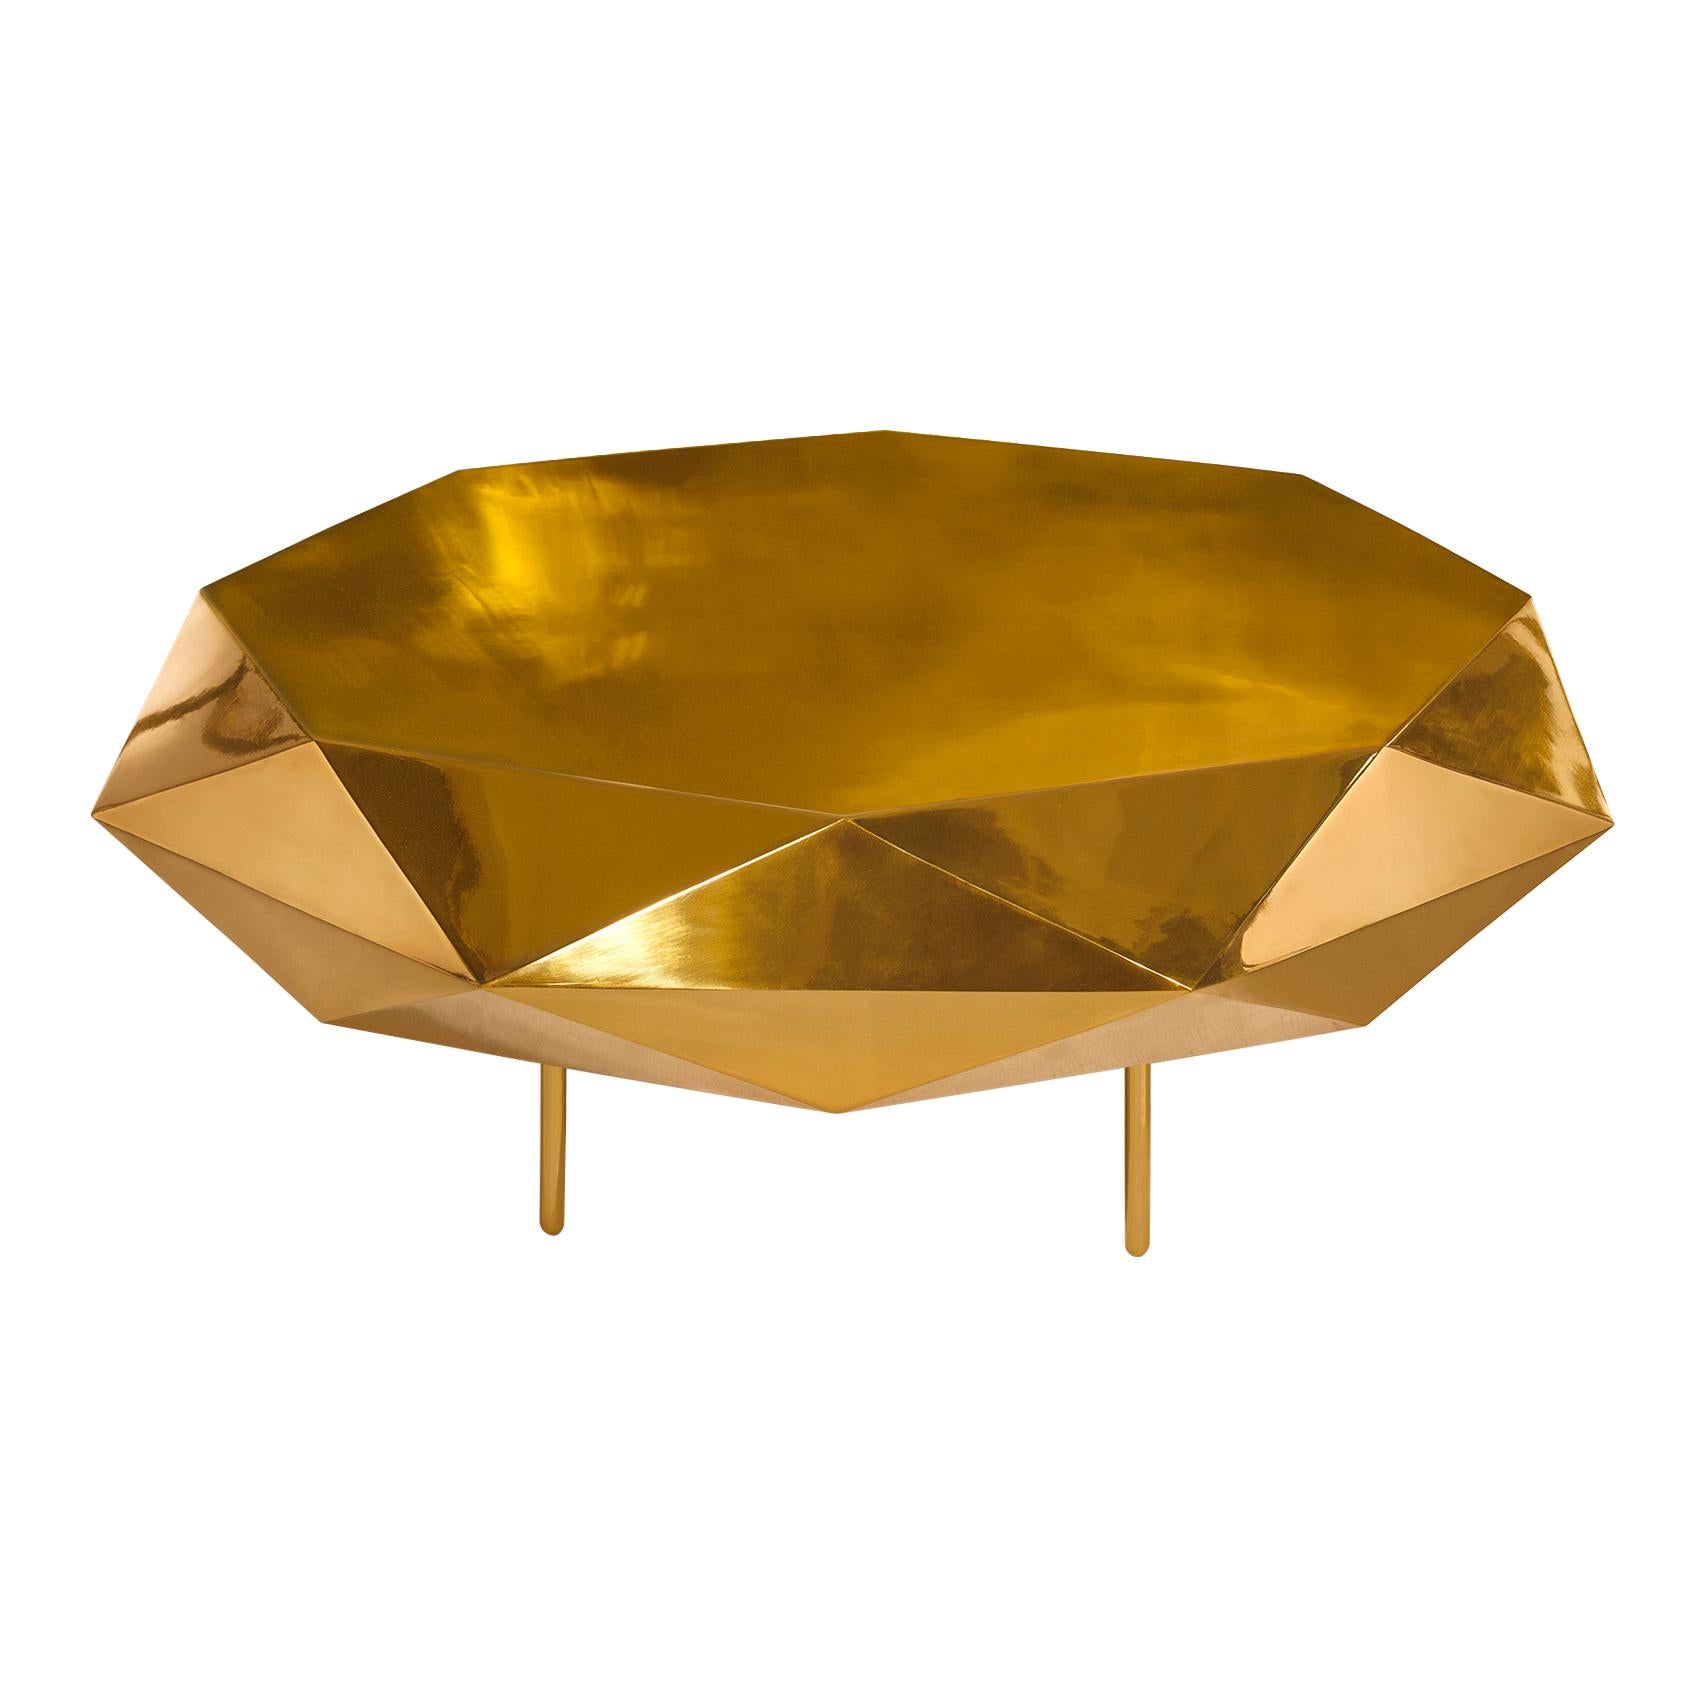 Le luxe rencontre le style avec la magnifique table basse Stella Large Gold de NIKA ZUPANC. Disponible en or ou en or rose, il est circulaire avec un bord étoilé et s'intègre parfaitement dans tout espace intérieur.

Nika ZUPANC, designer slovène de